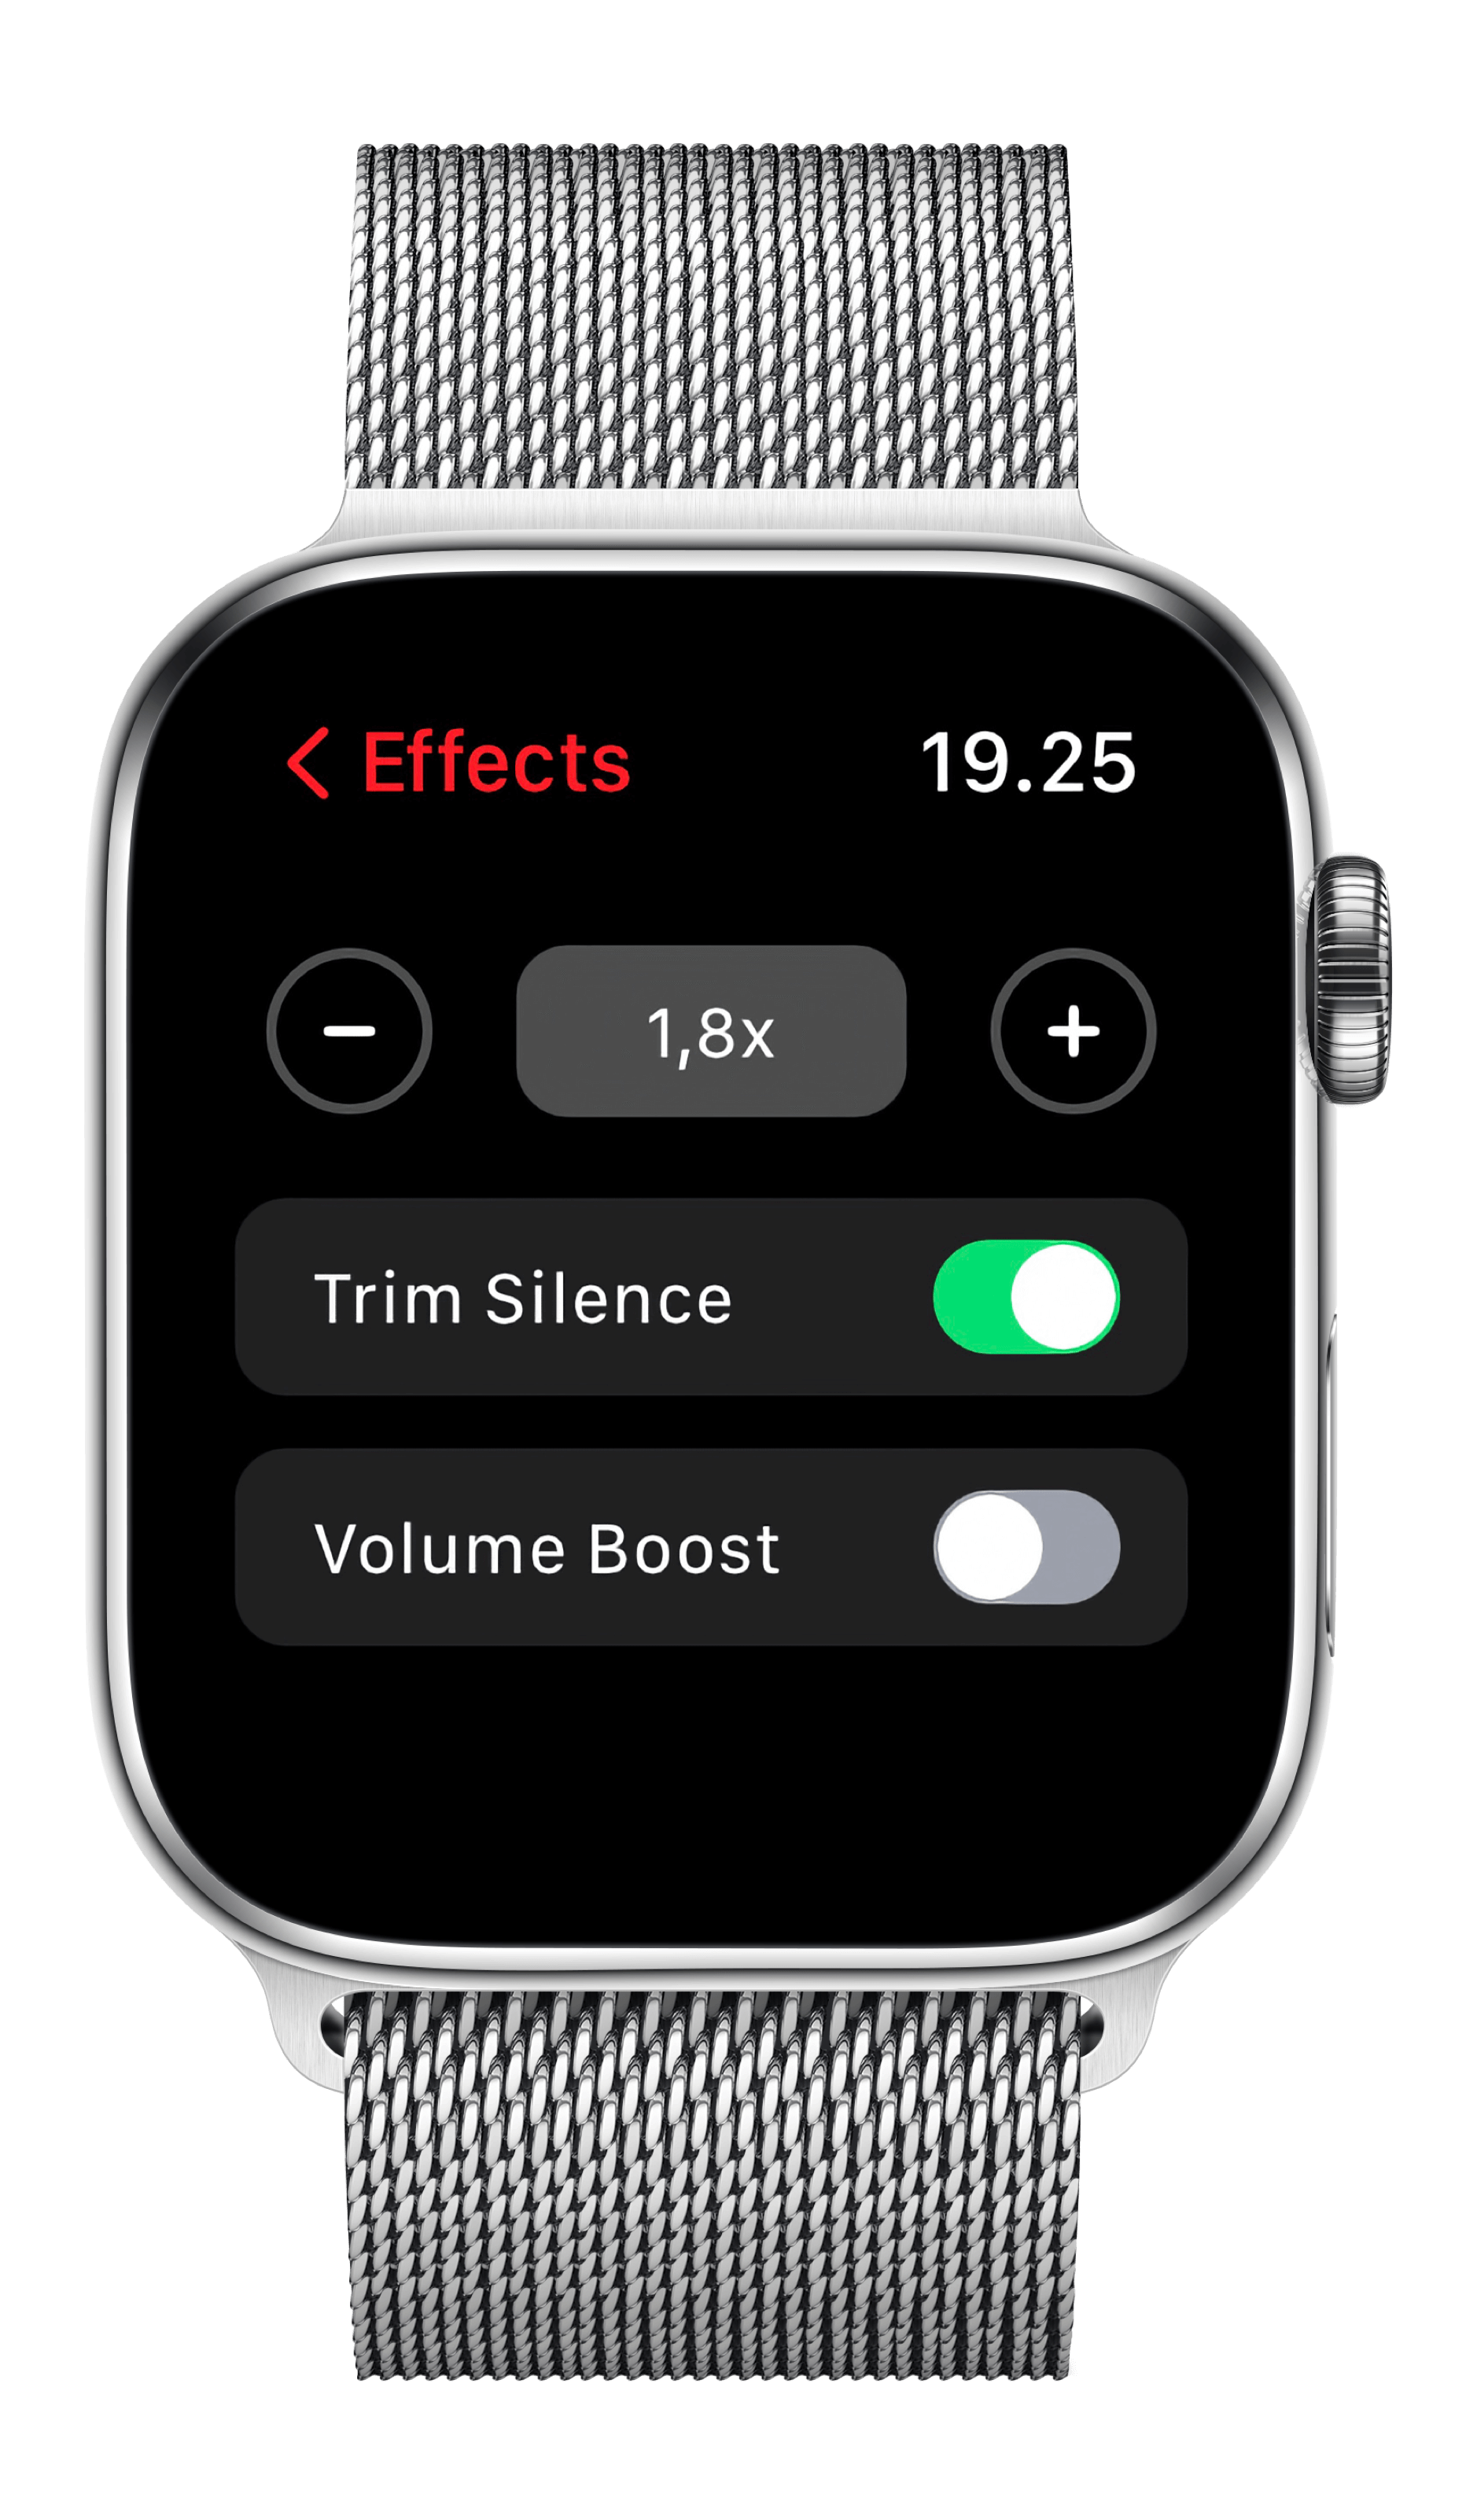 Bild zeigt Apple Watch mit Pocket Casts-App und ihren Einstellungen.